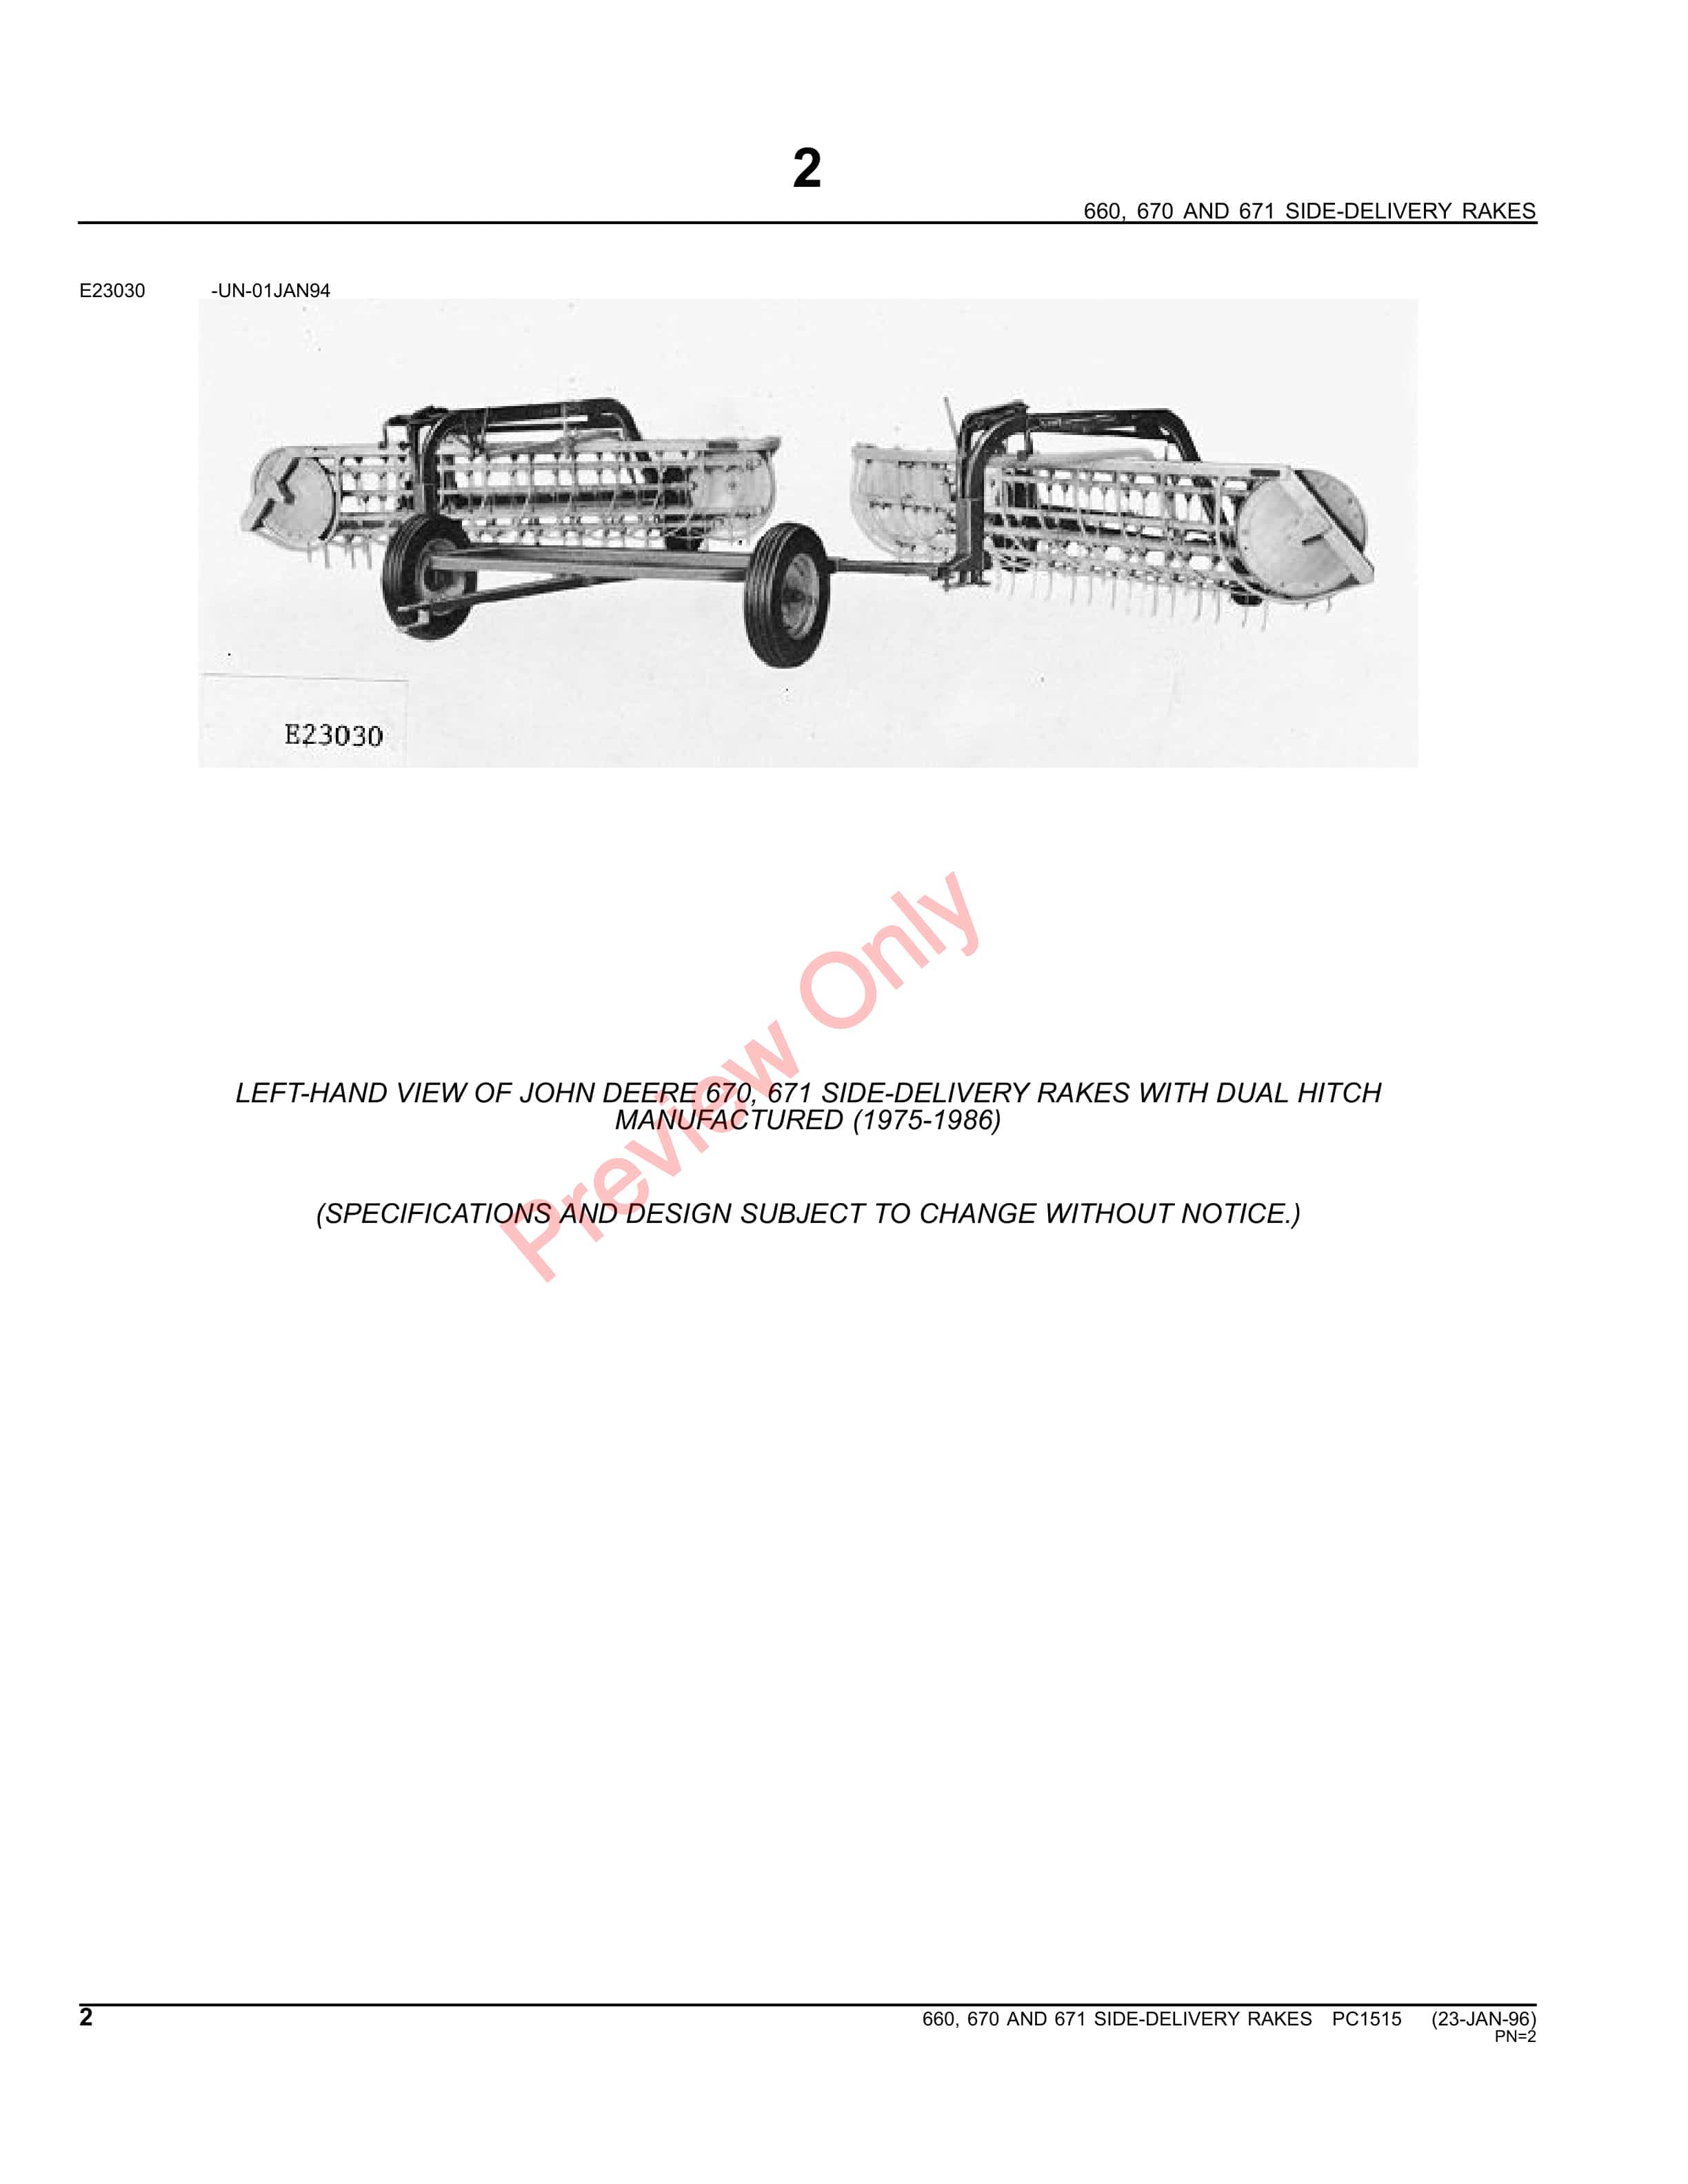 John Deere 660, 670, 671 Rakes and Dual Hitch Parts Catalog PC1515 09MAY11-4